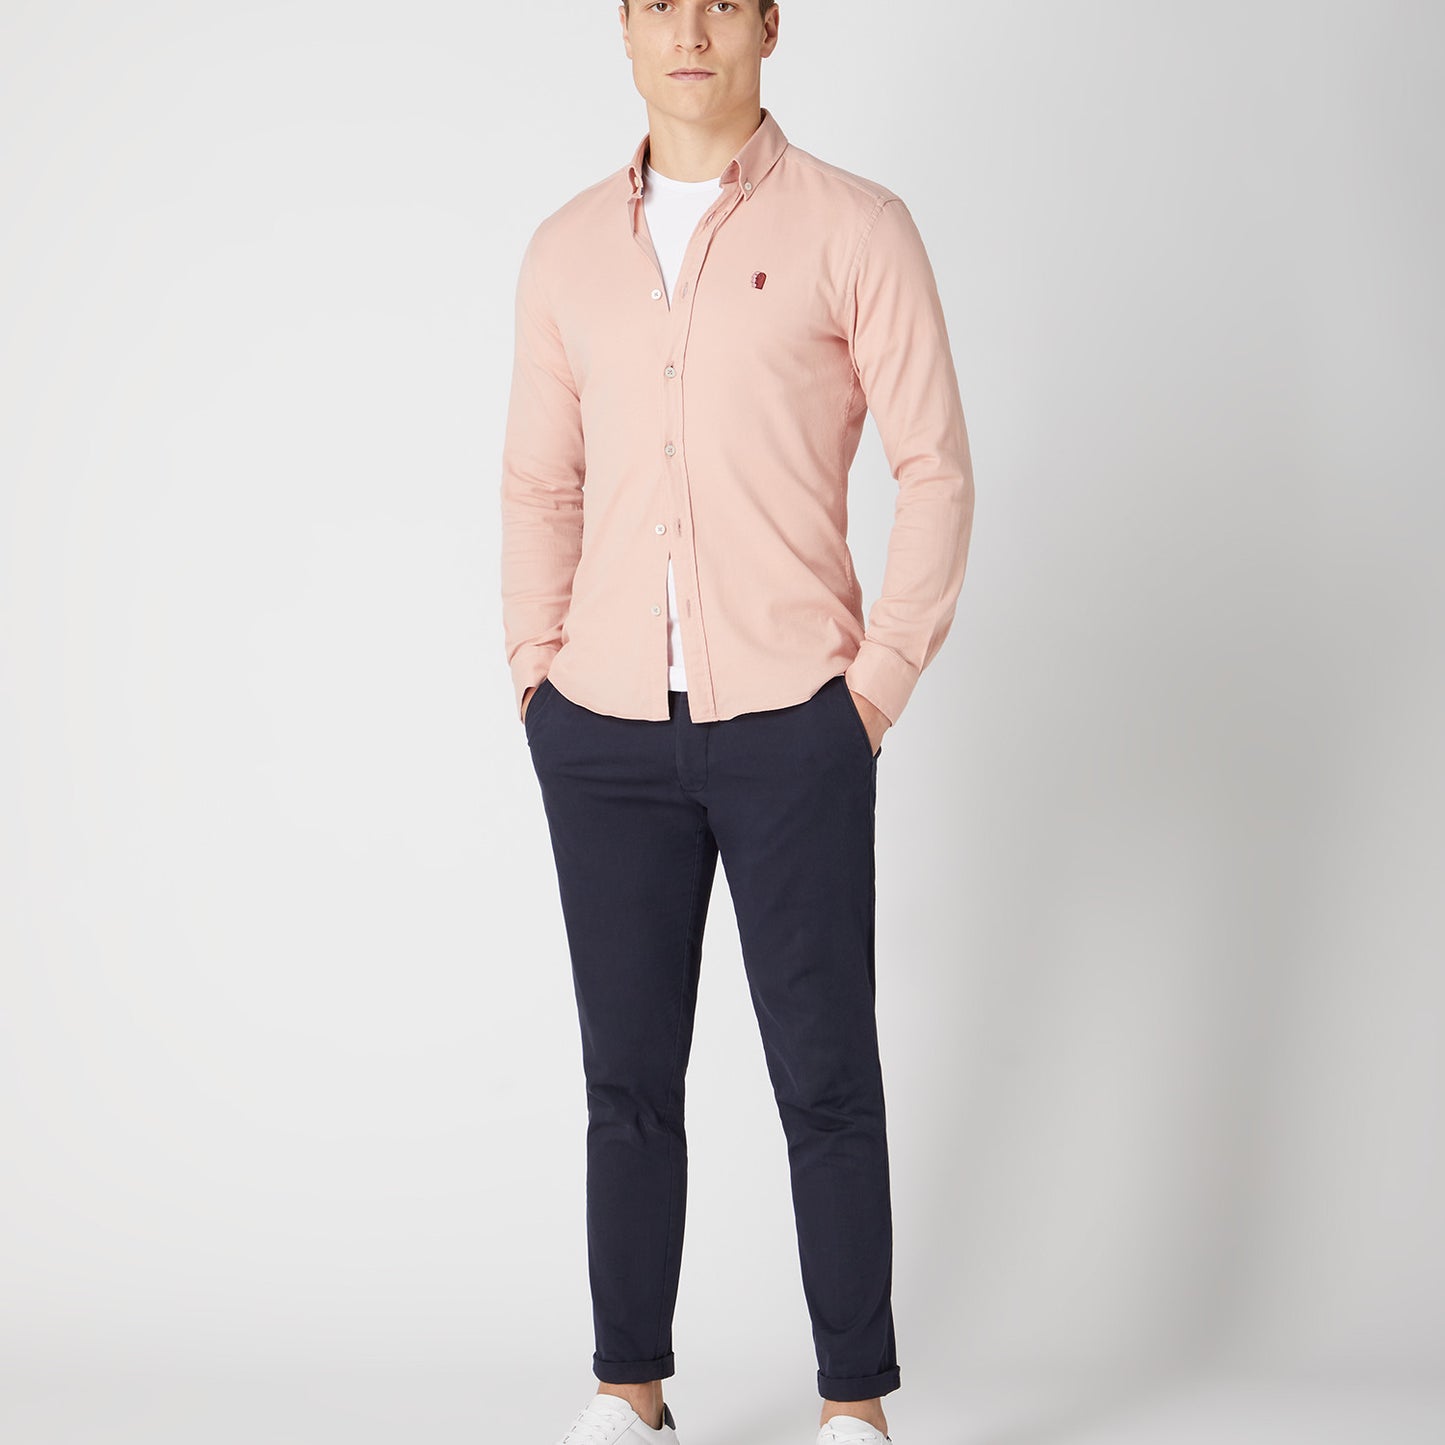 Remus Uomo 13570 61 Light Pink Slim/Ashton Shirt